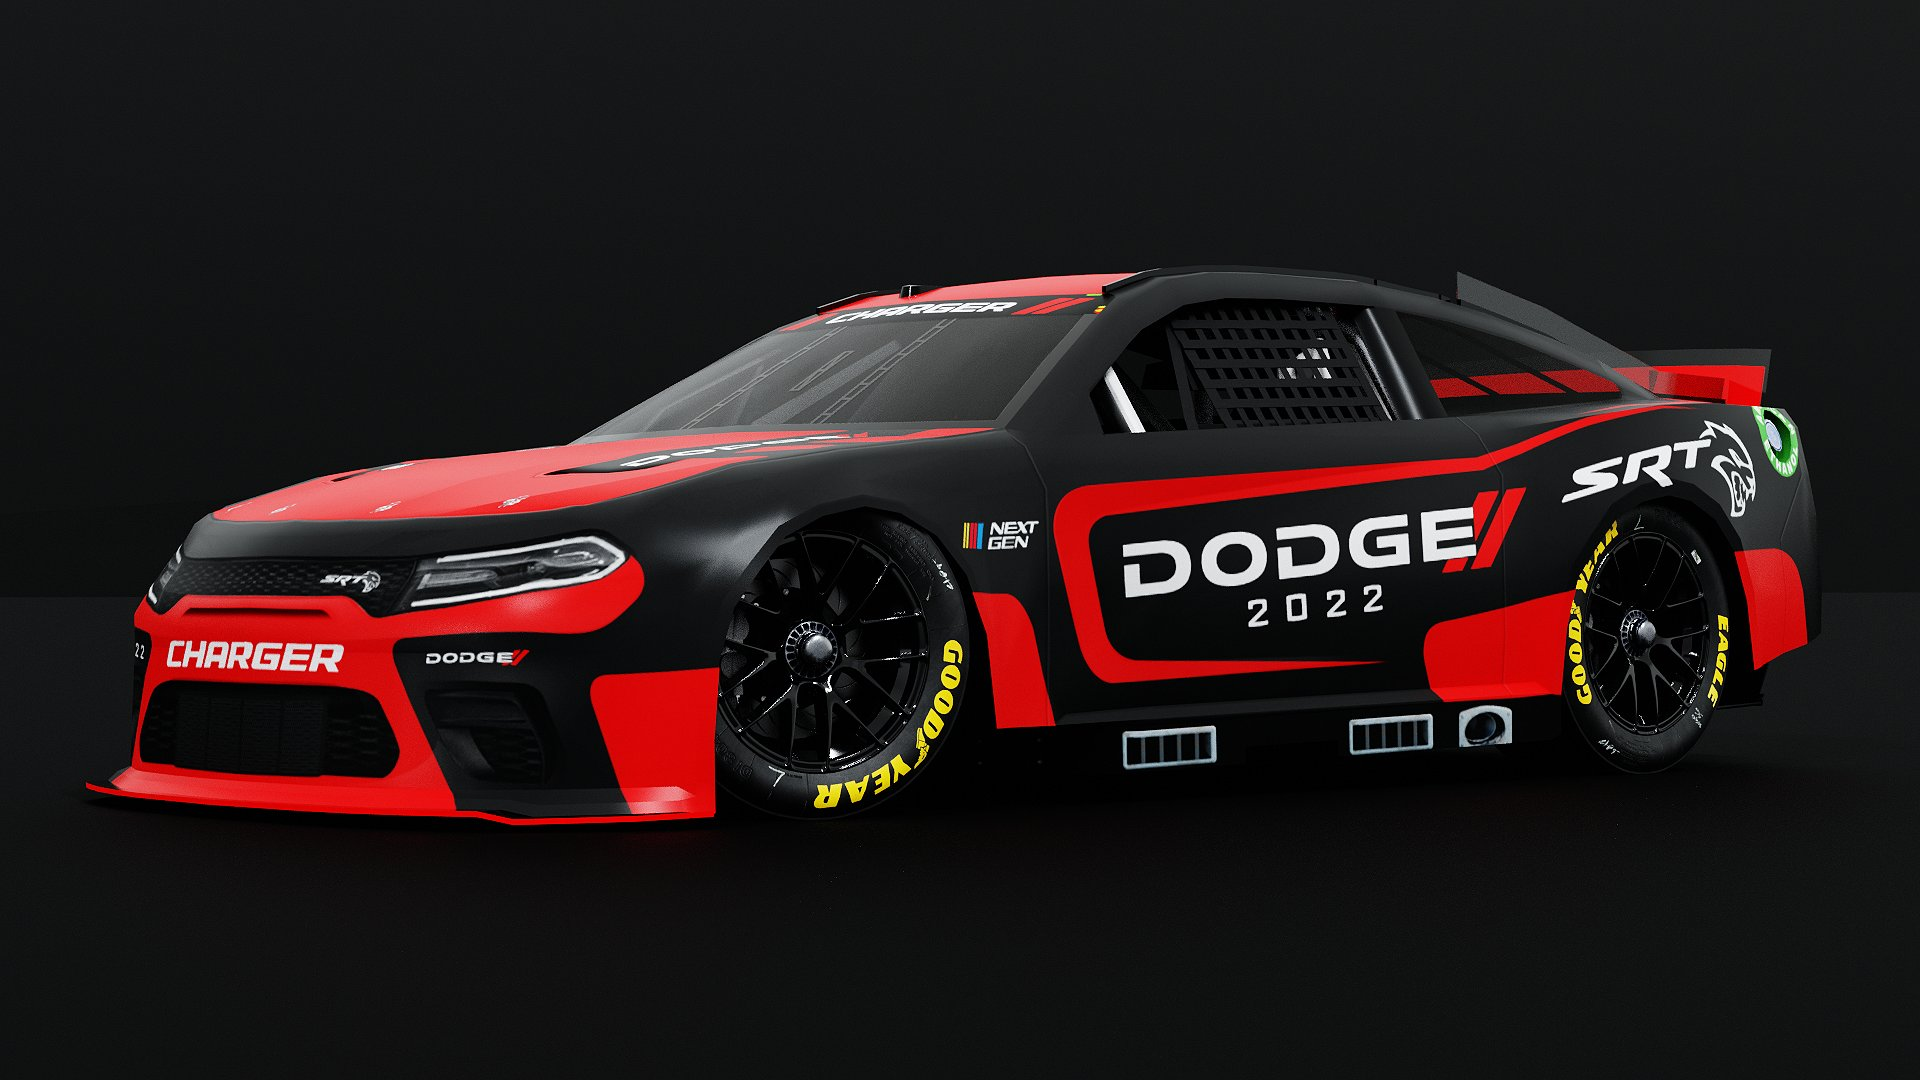 Rumor: Dodge to return to NASCAR